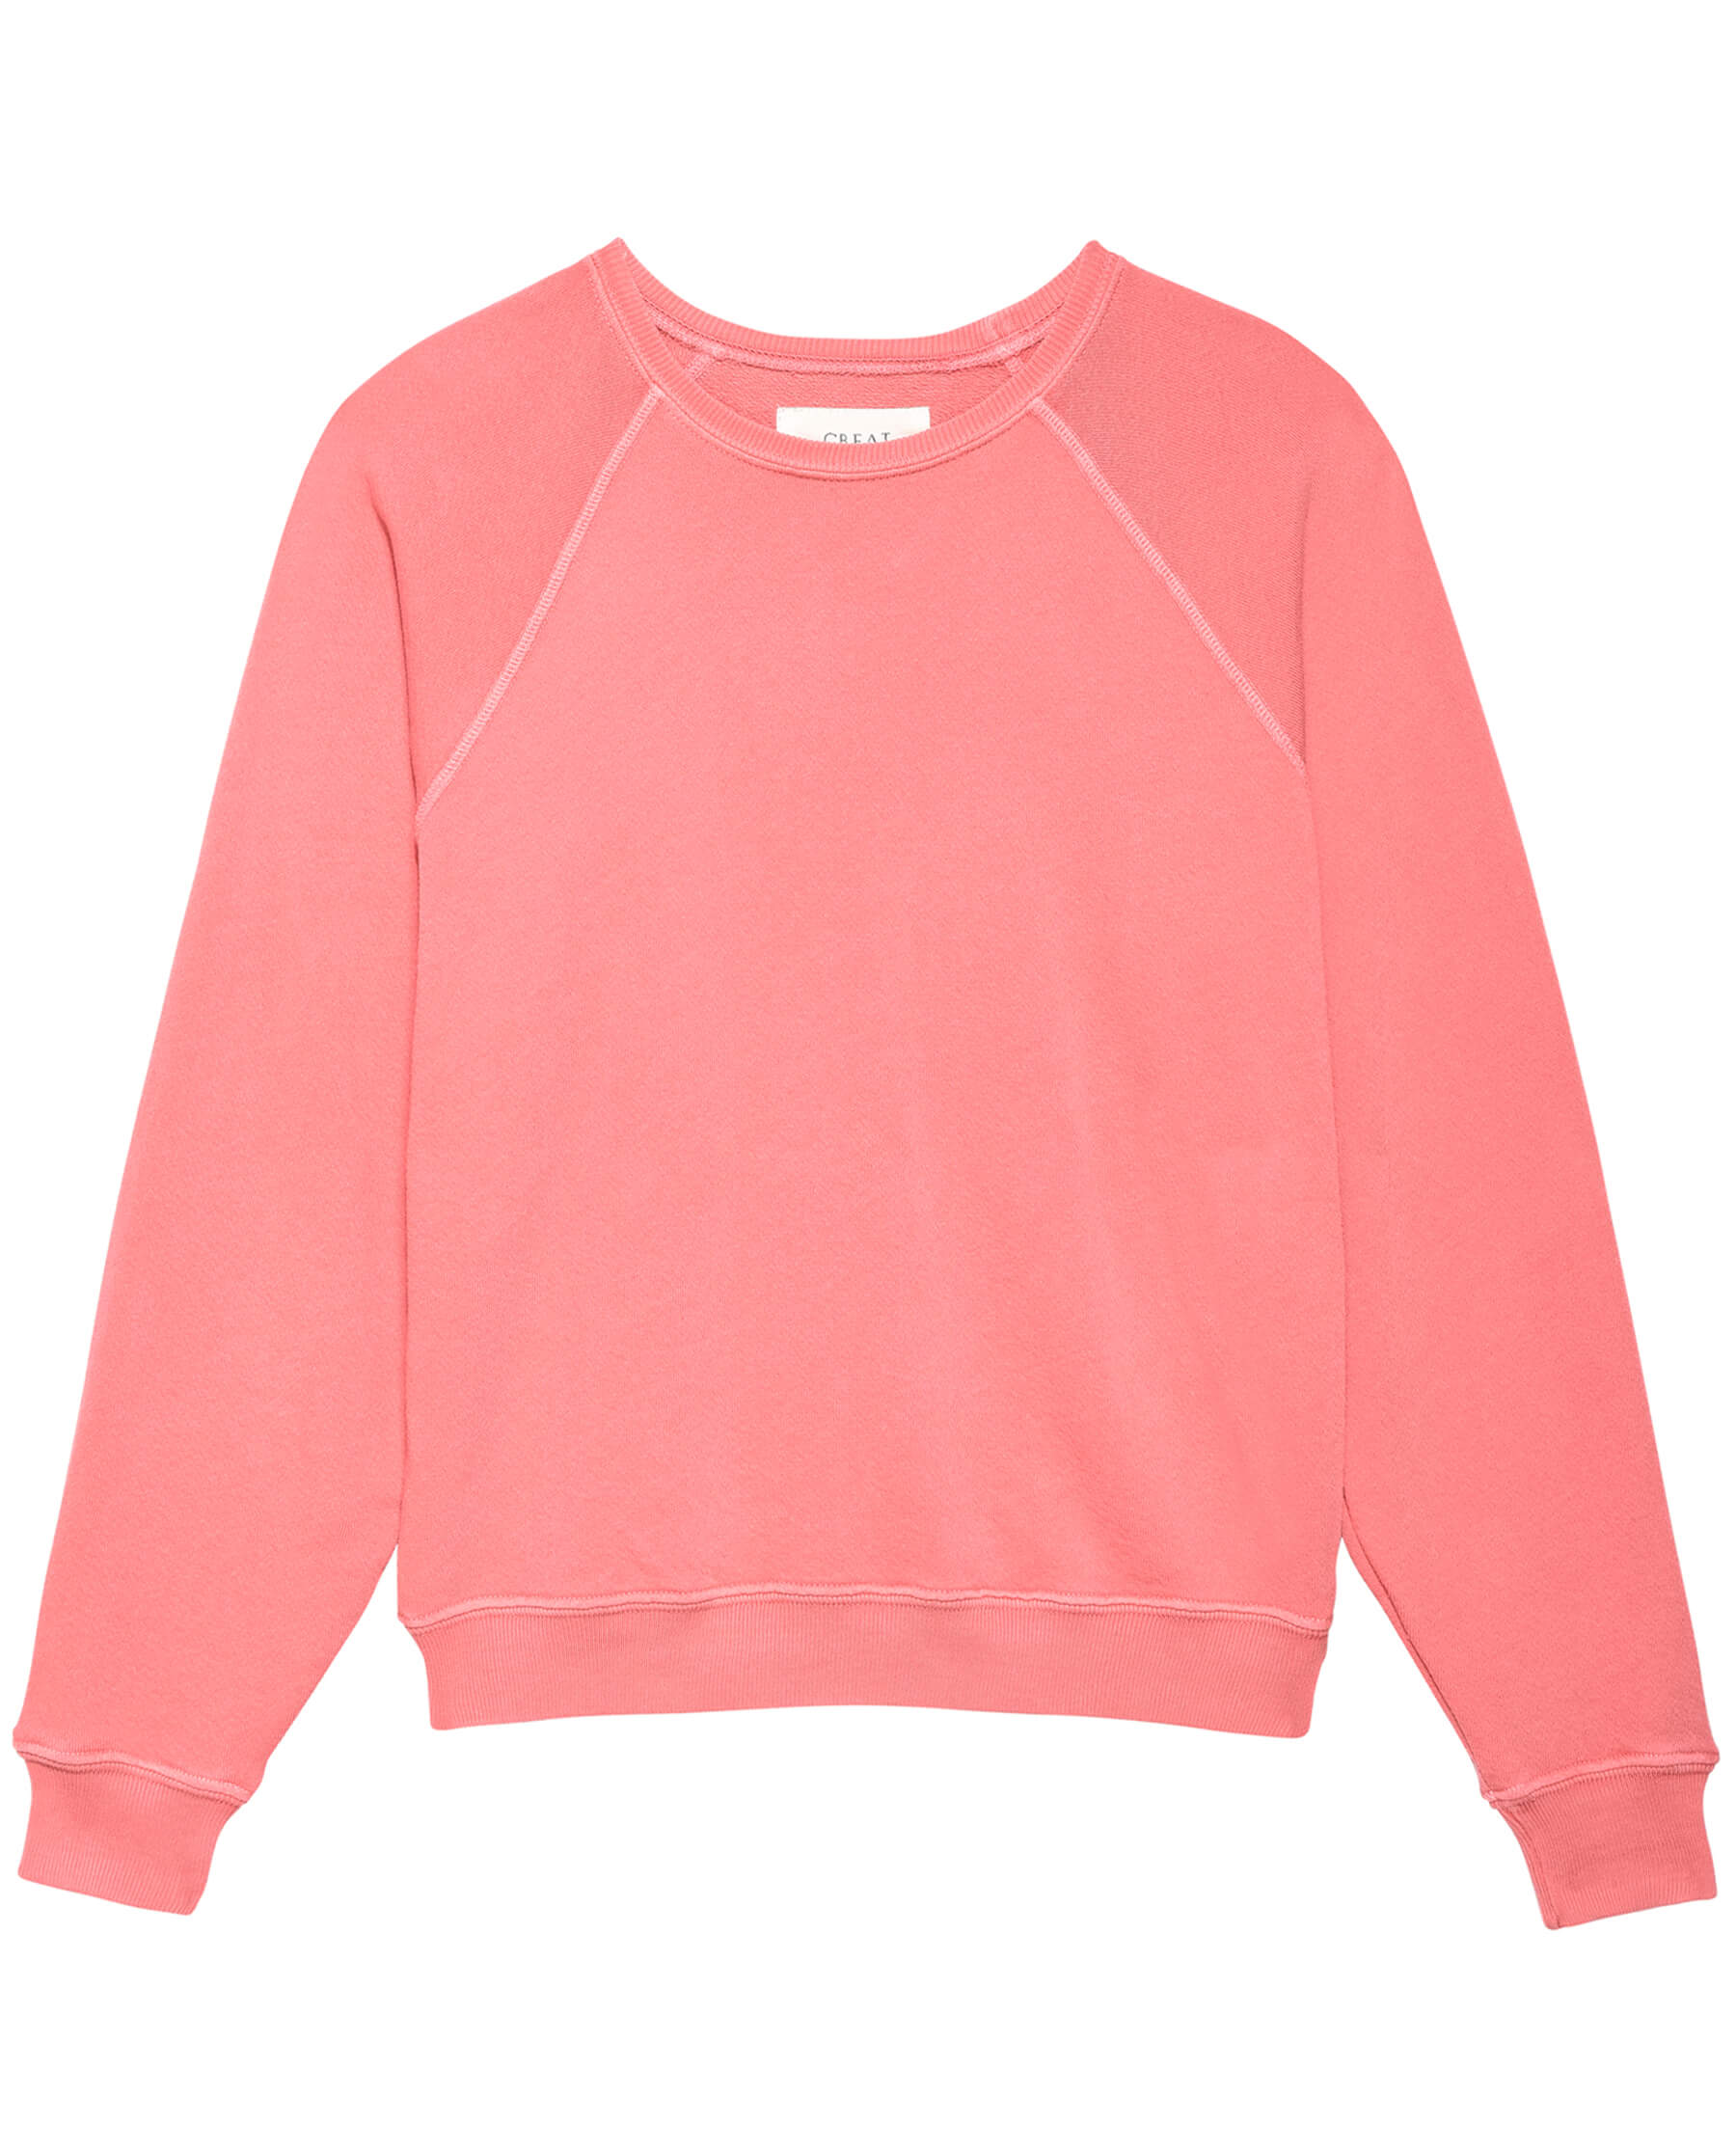 The Shrunken Sweatshirt. Solid -- Pomelo